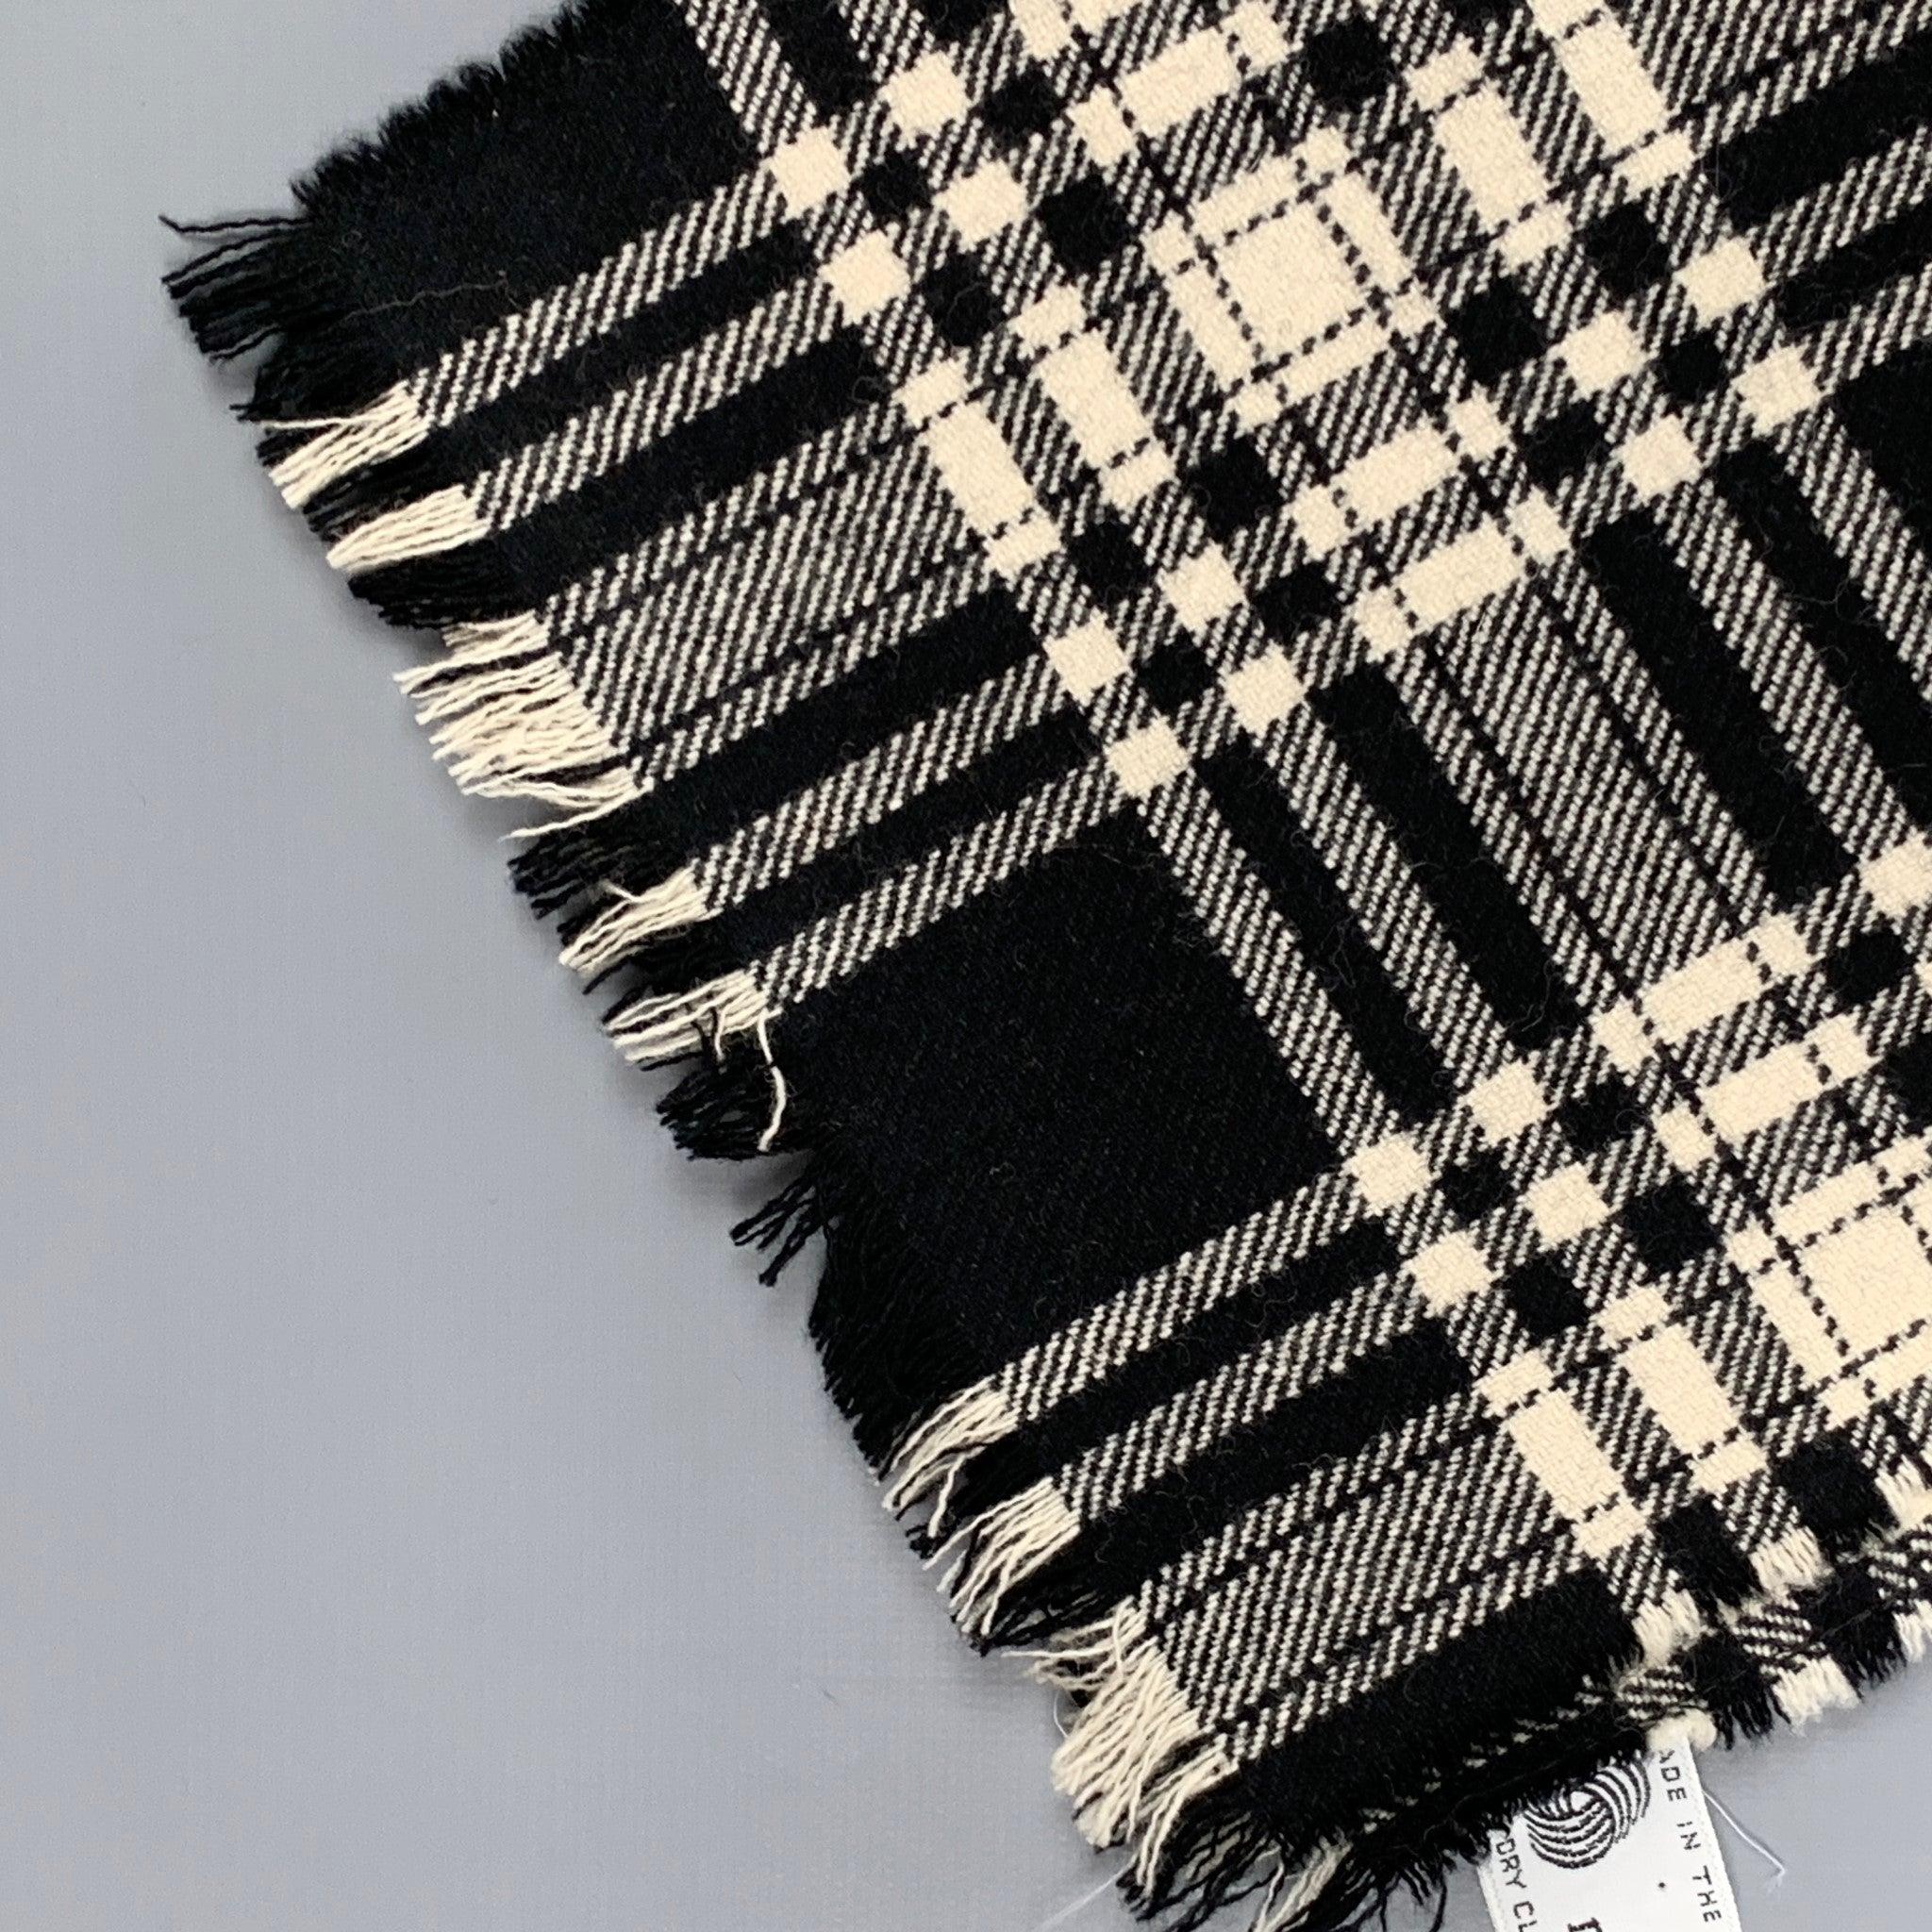 L'écharpe Harrods se présente sous la forme d'un lainage écossais noir et blanc, bordé d'une frange.
Très bien
Etat d'occasion. 

Mesures : 
  
34 pouces  x 8.25 pouces 
  
  
 
Référence : 118711
Catégorie : Foulards
Plus de détails
    
Marque : 